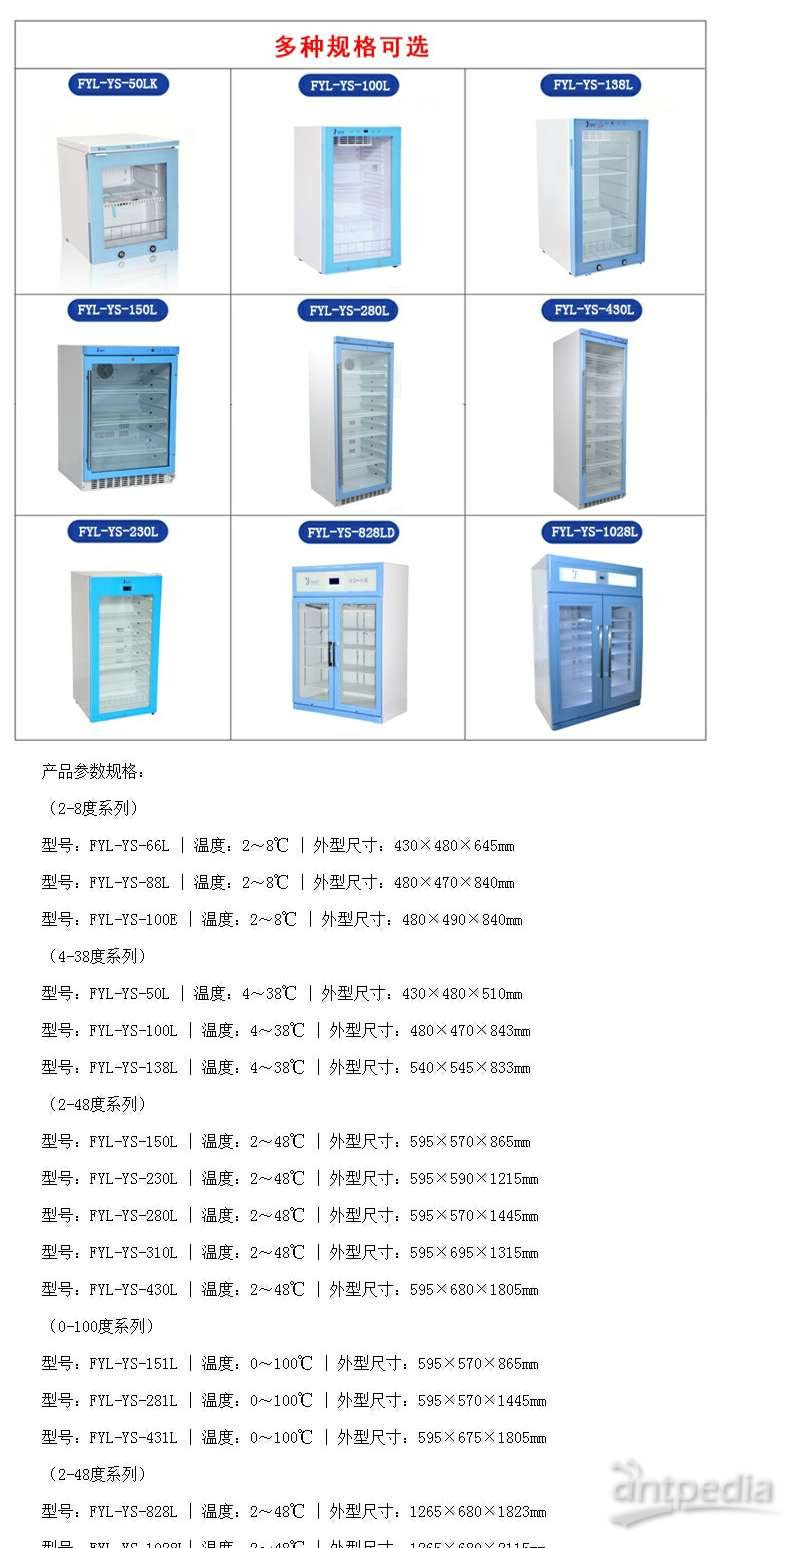 剂型:口服片剂冷藏柜FYL-YS-150LD